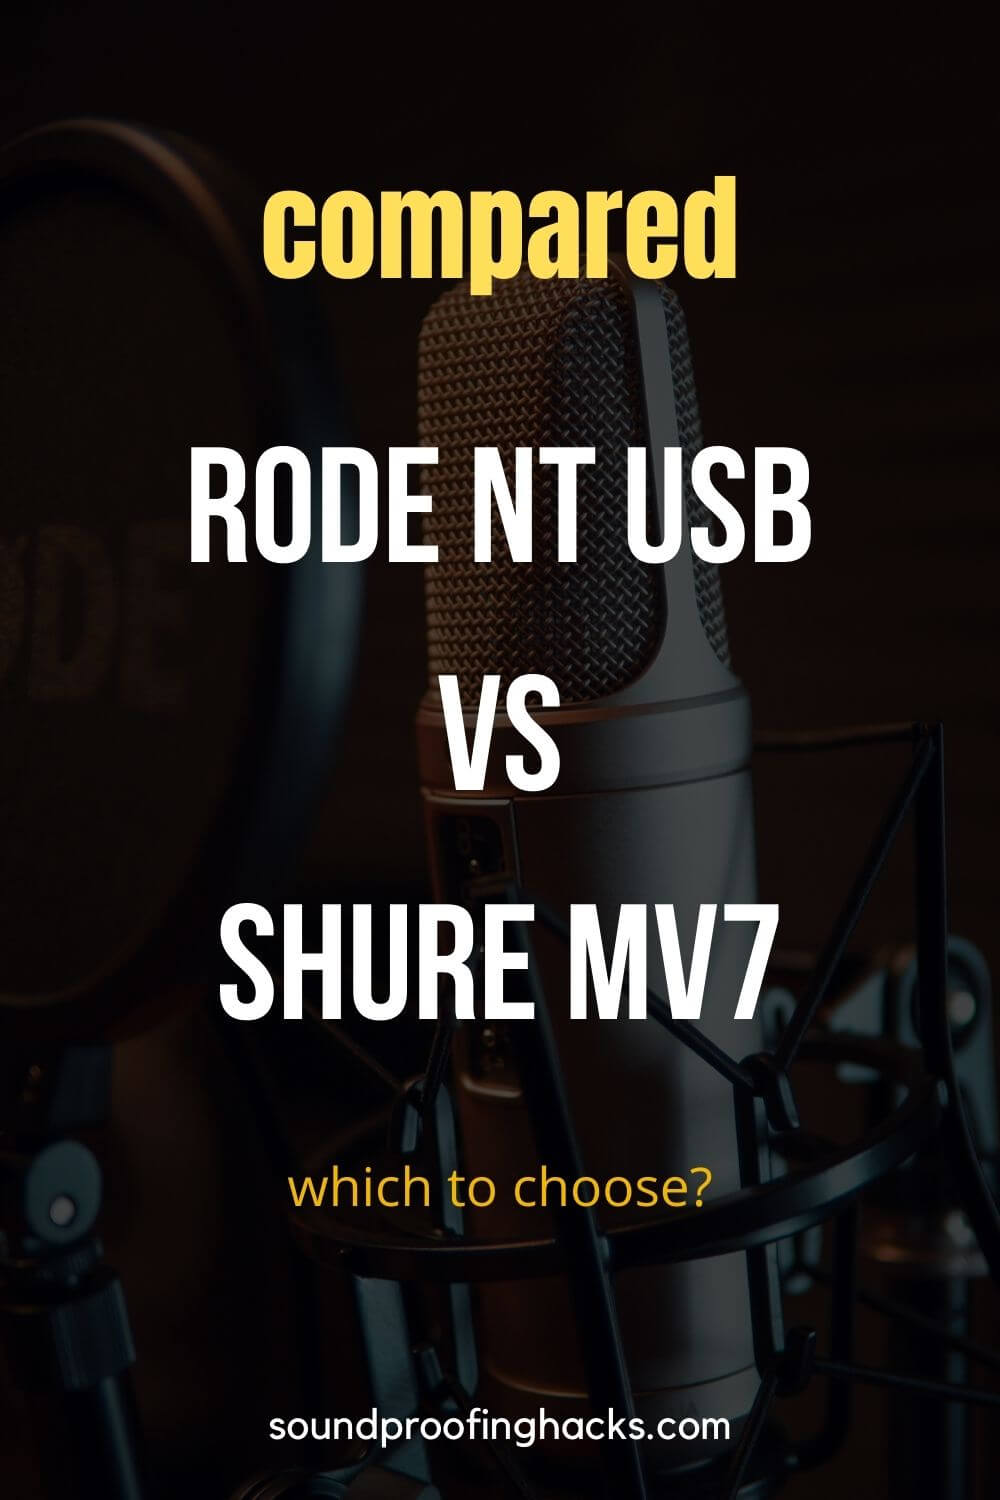 shure mv7 vs rode nt usb comparison pinterest